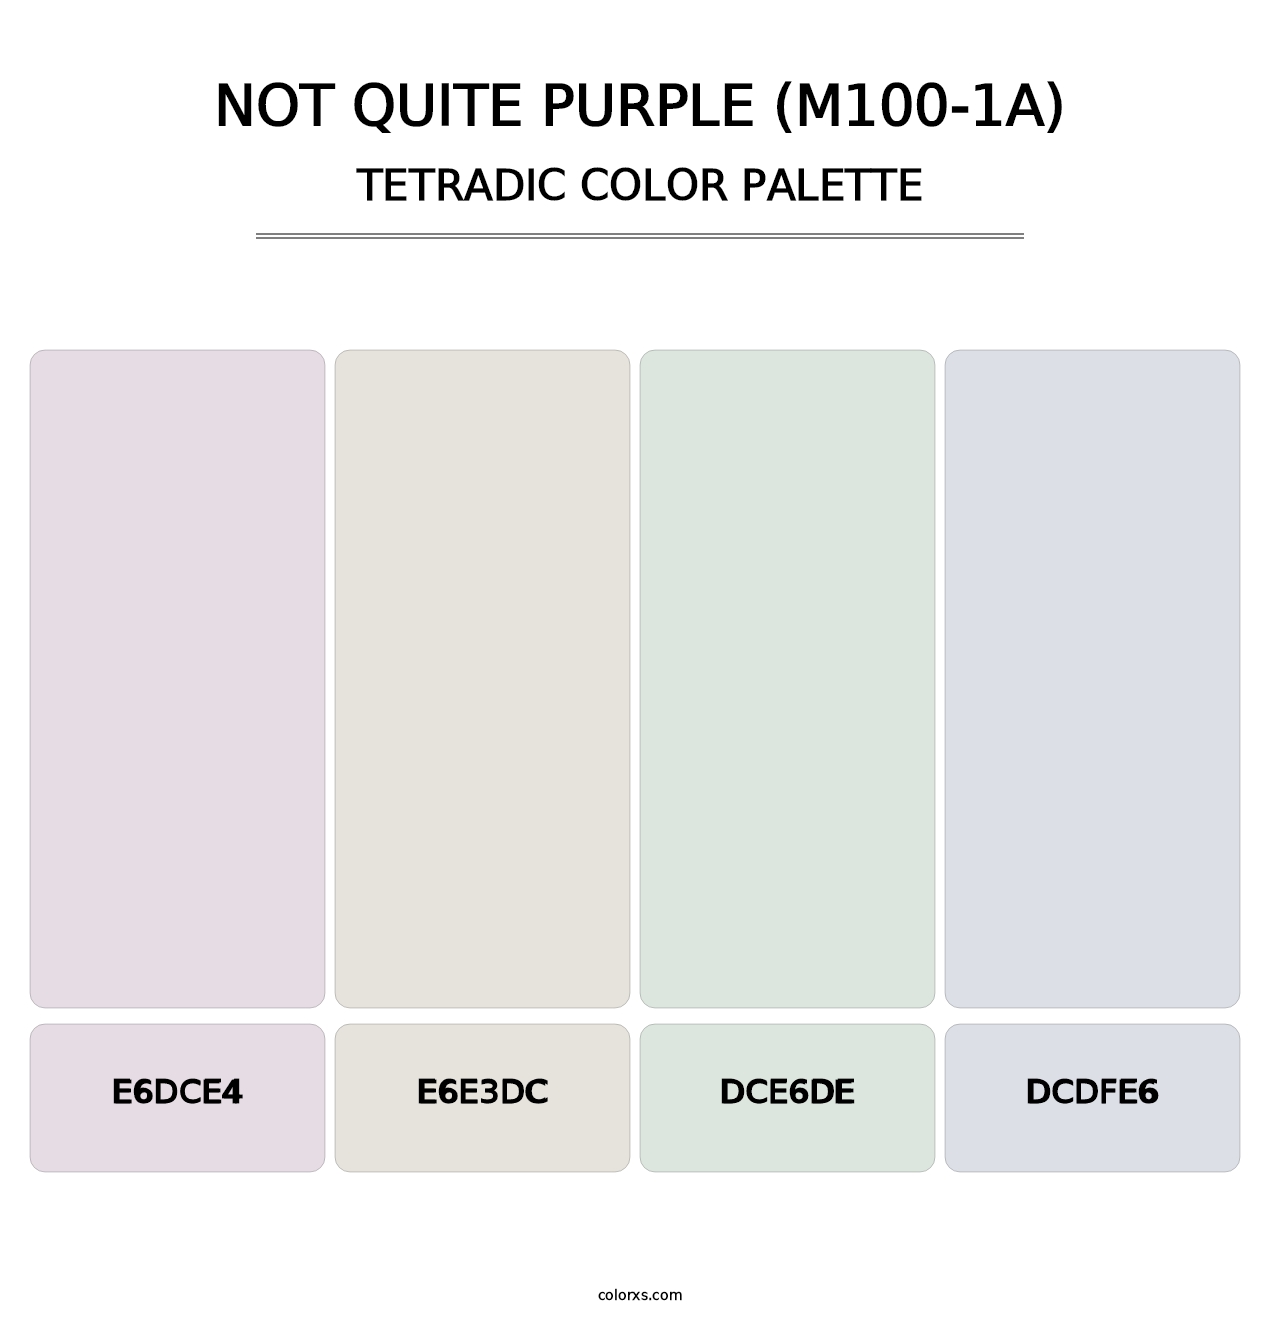 Not Quite Purple (M100-1A) - Tetradic Color Palette